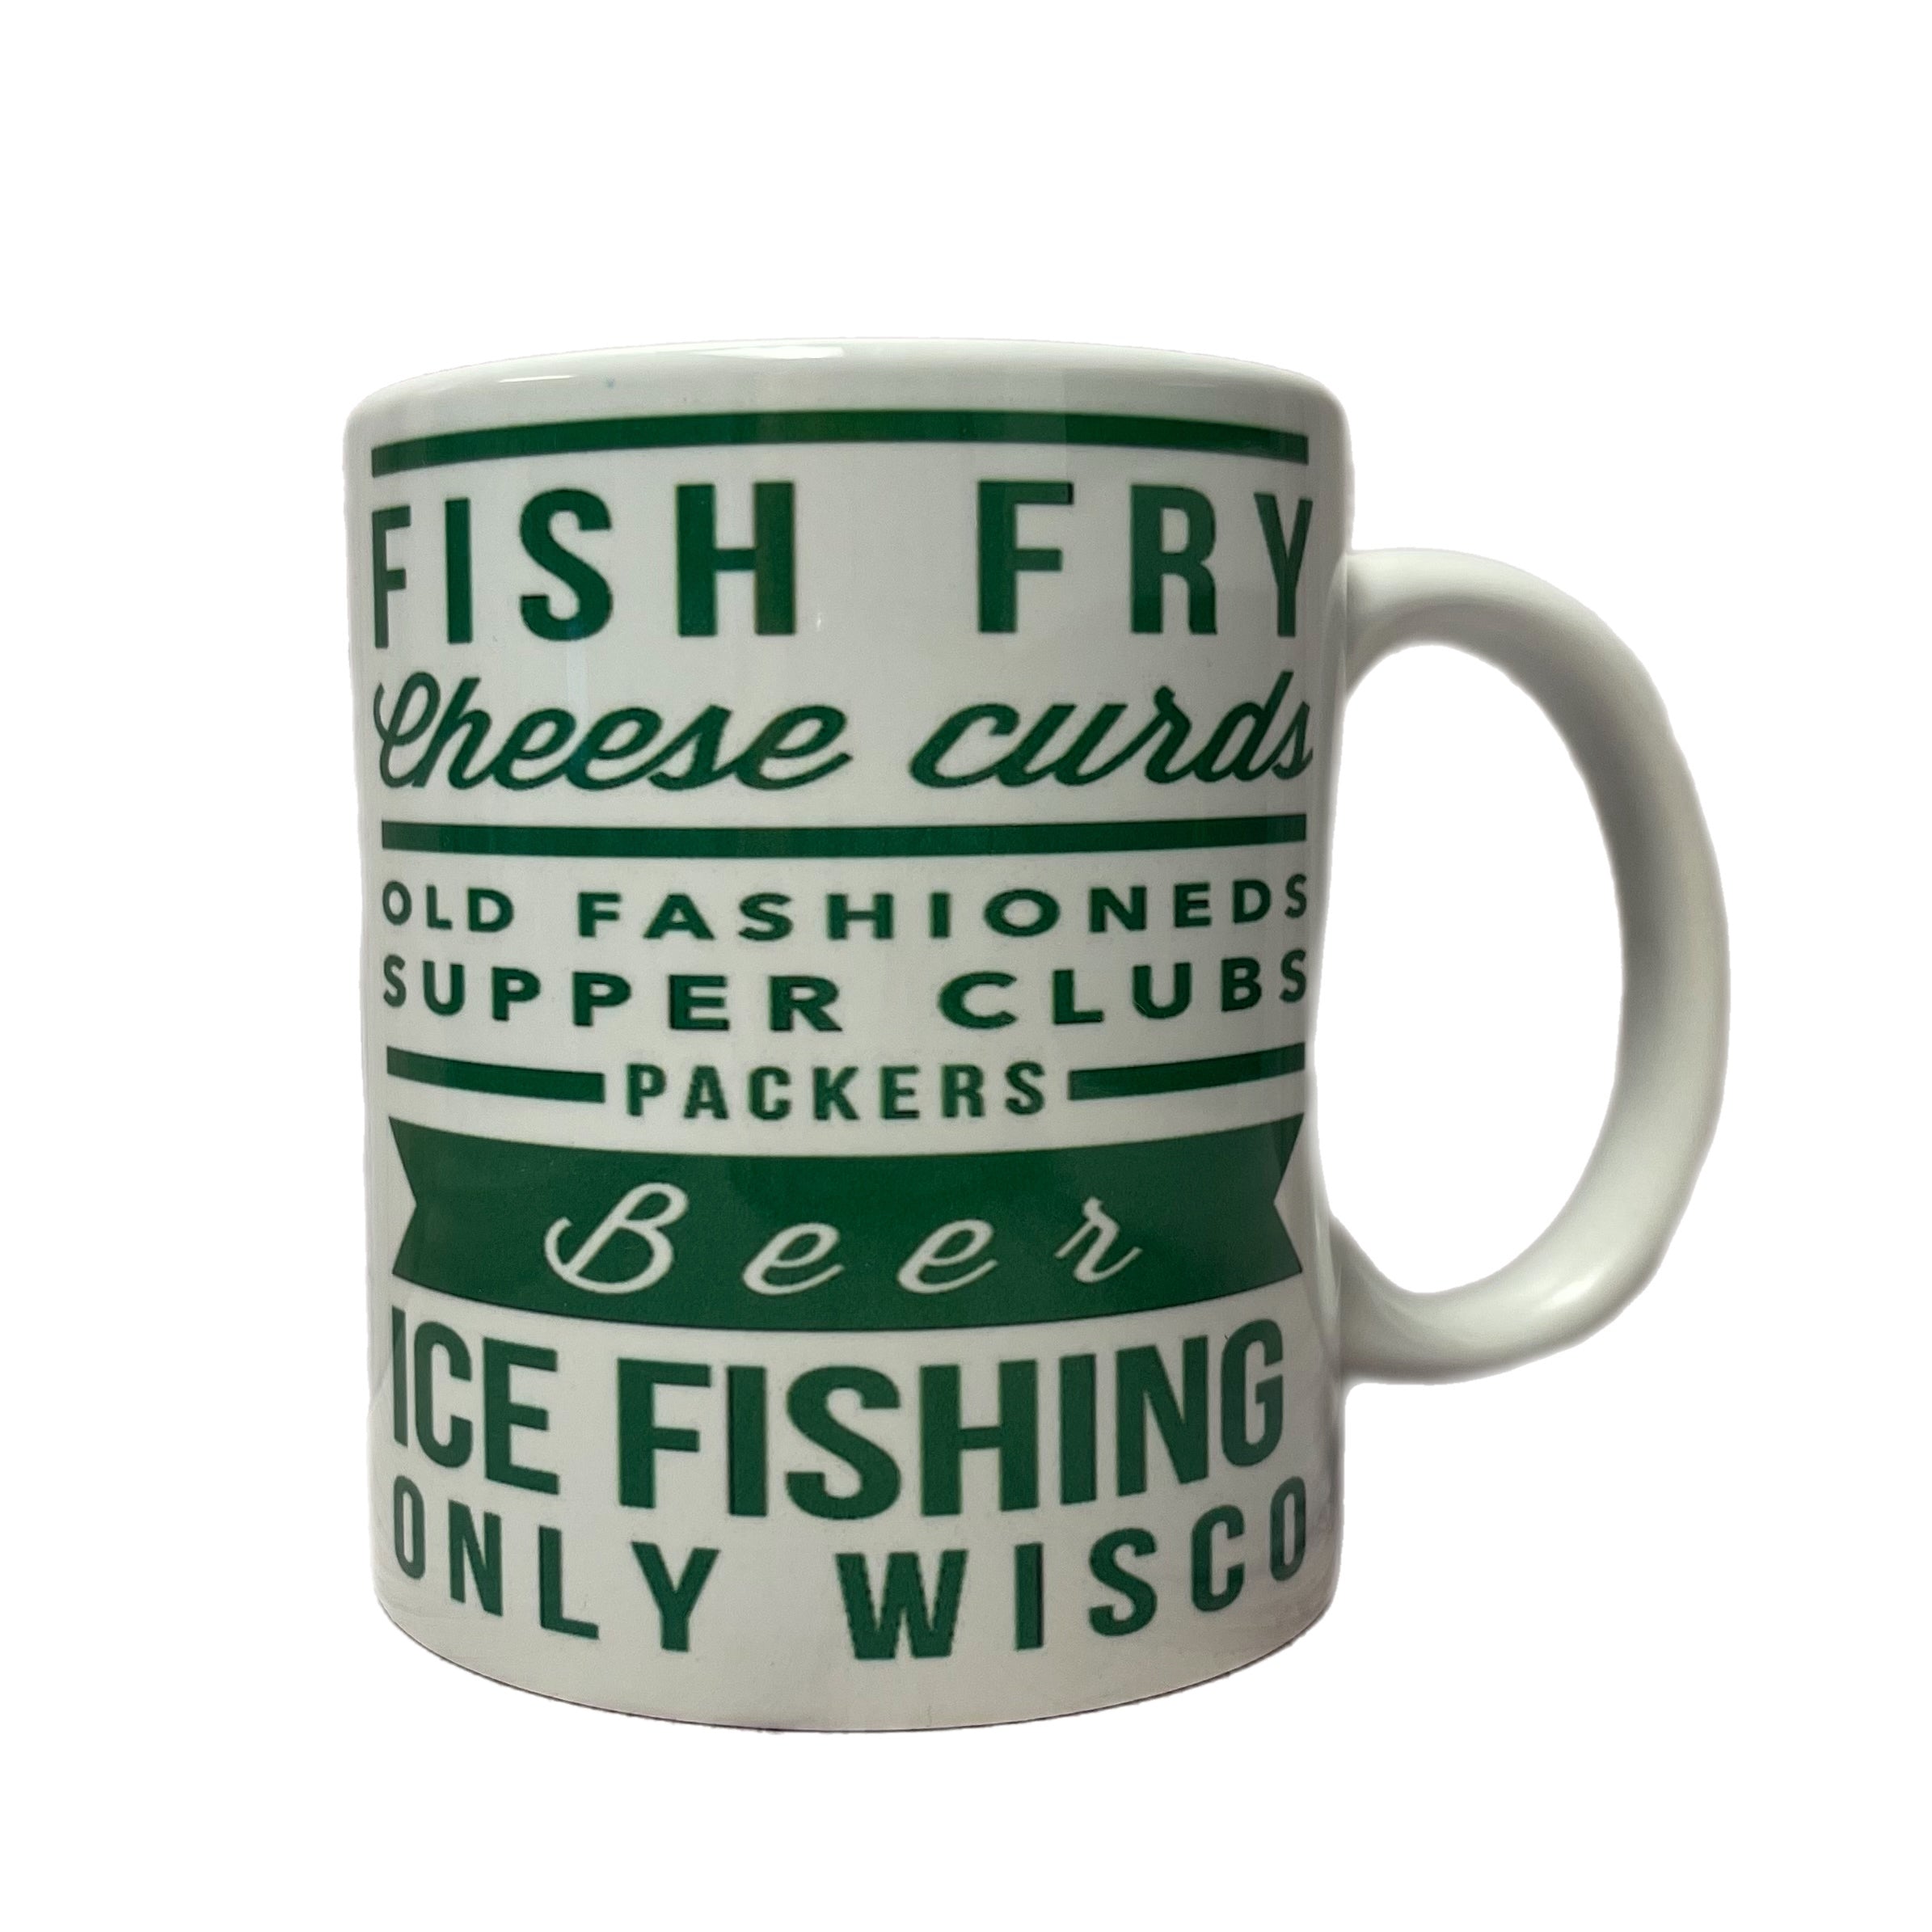 Fish Fry Cheese Curds Mug